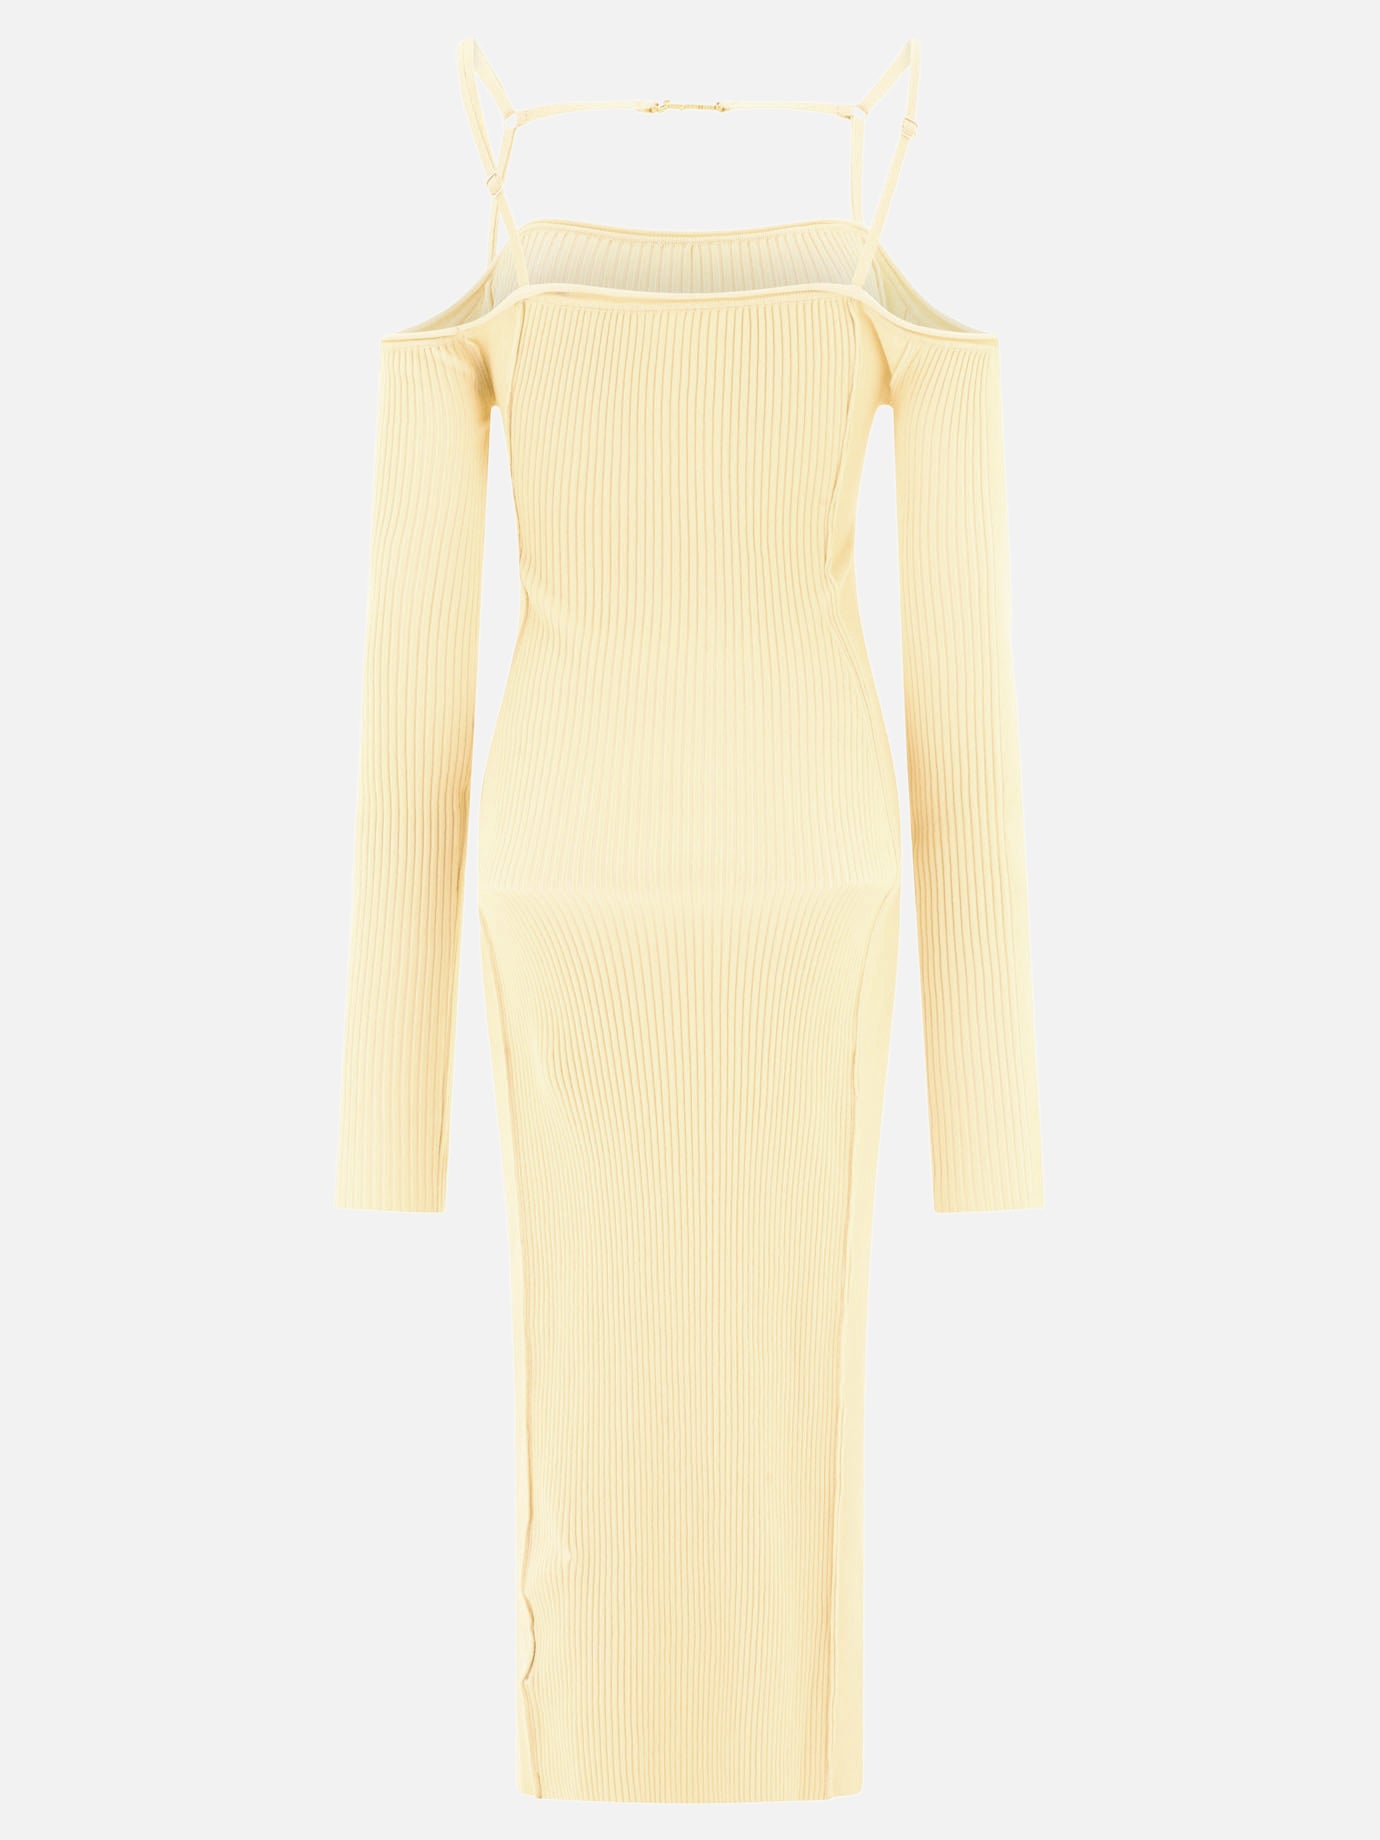 "La robe Sierra" dress